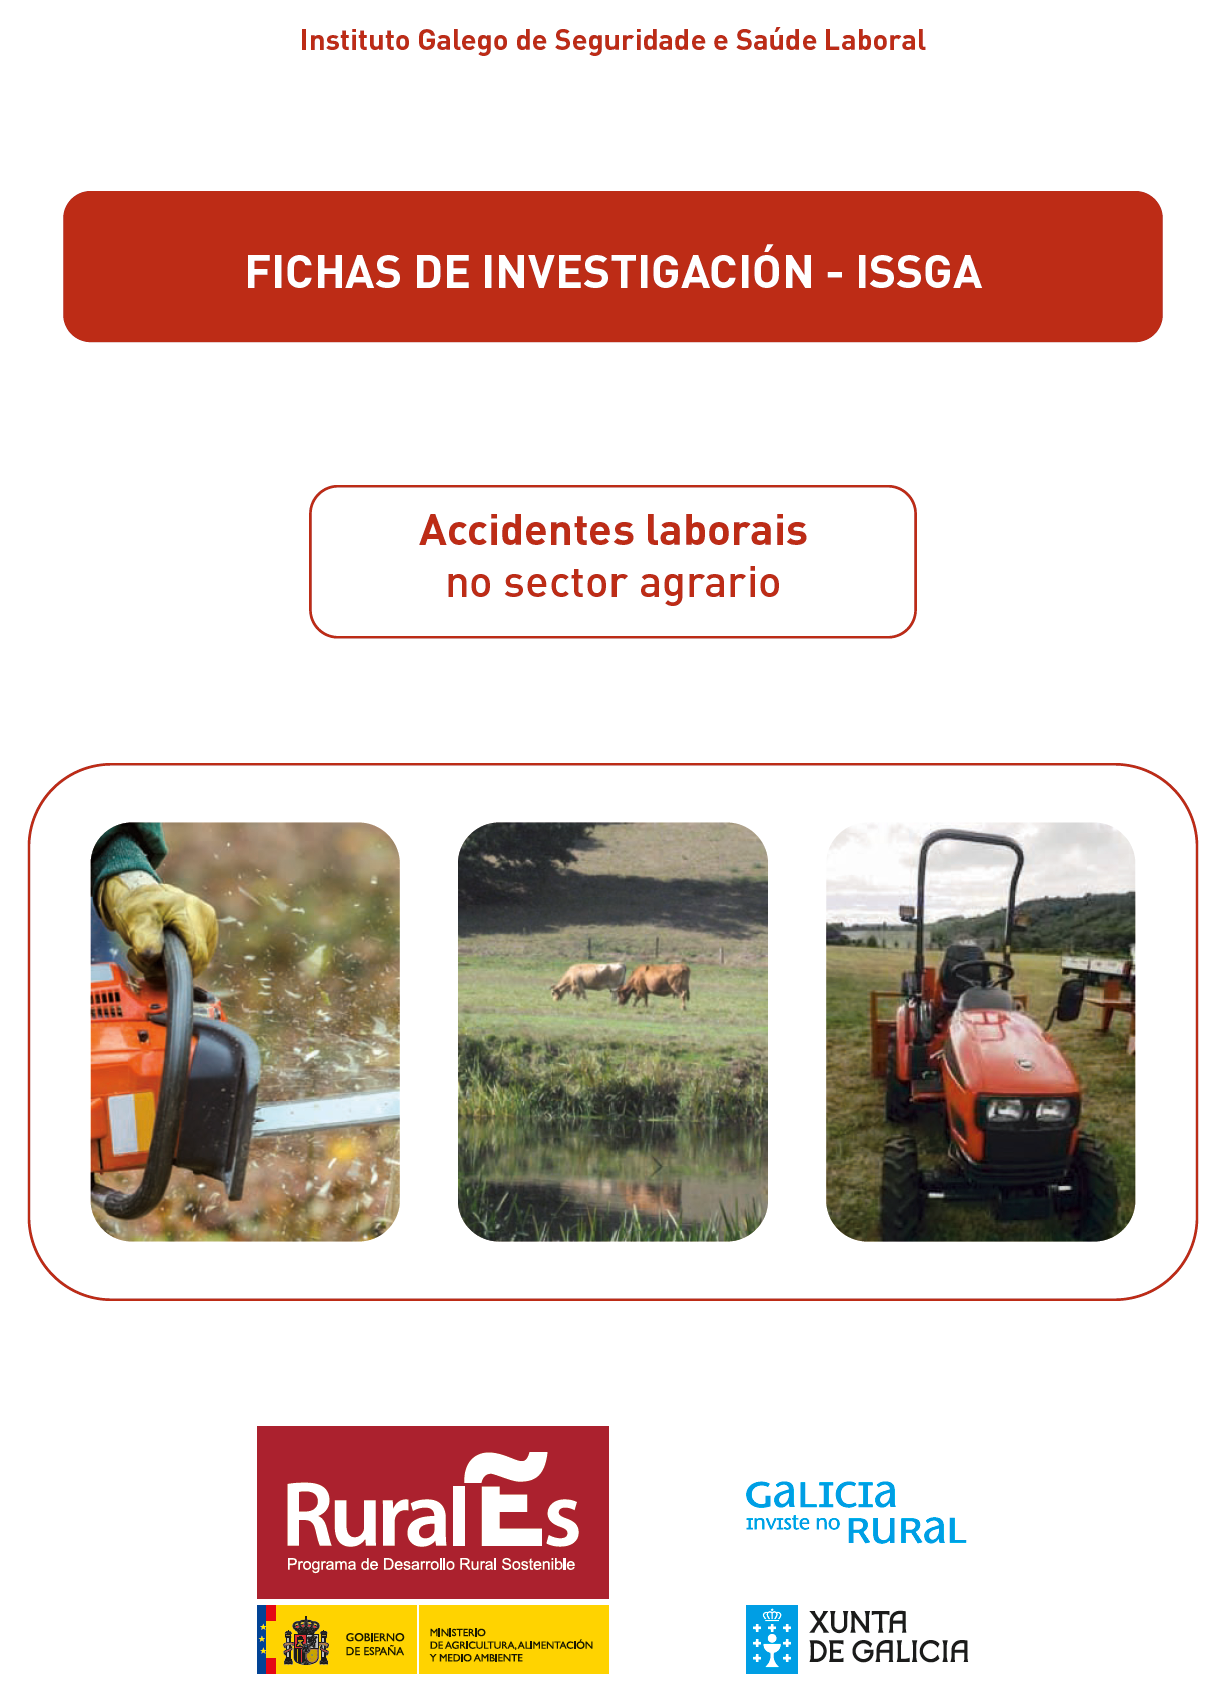 Fichas de investigación de accidentes no sector agrario